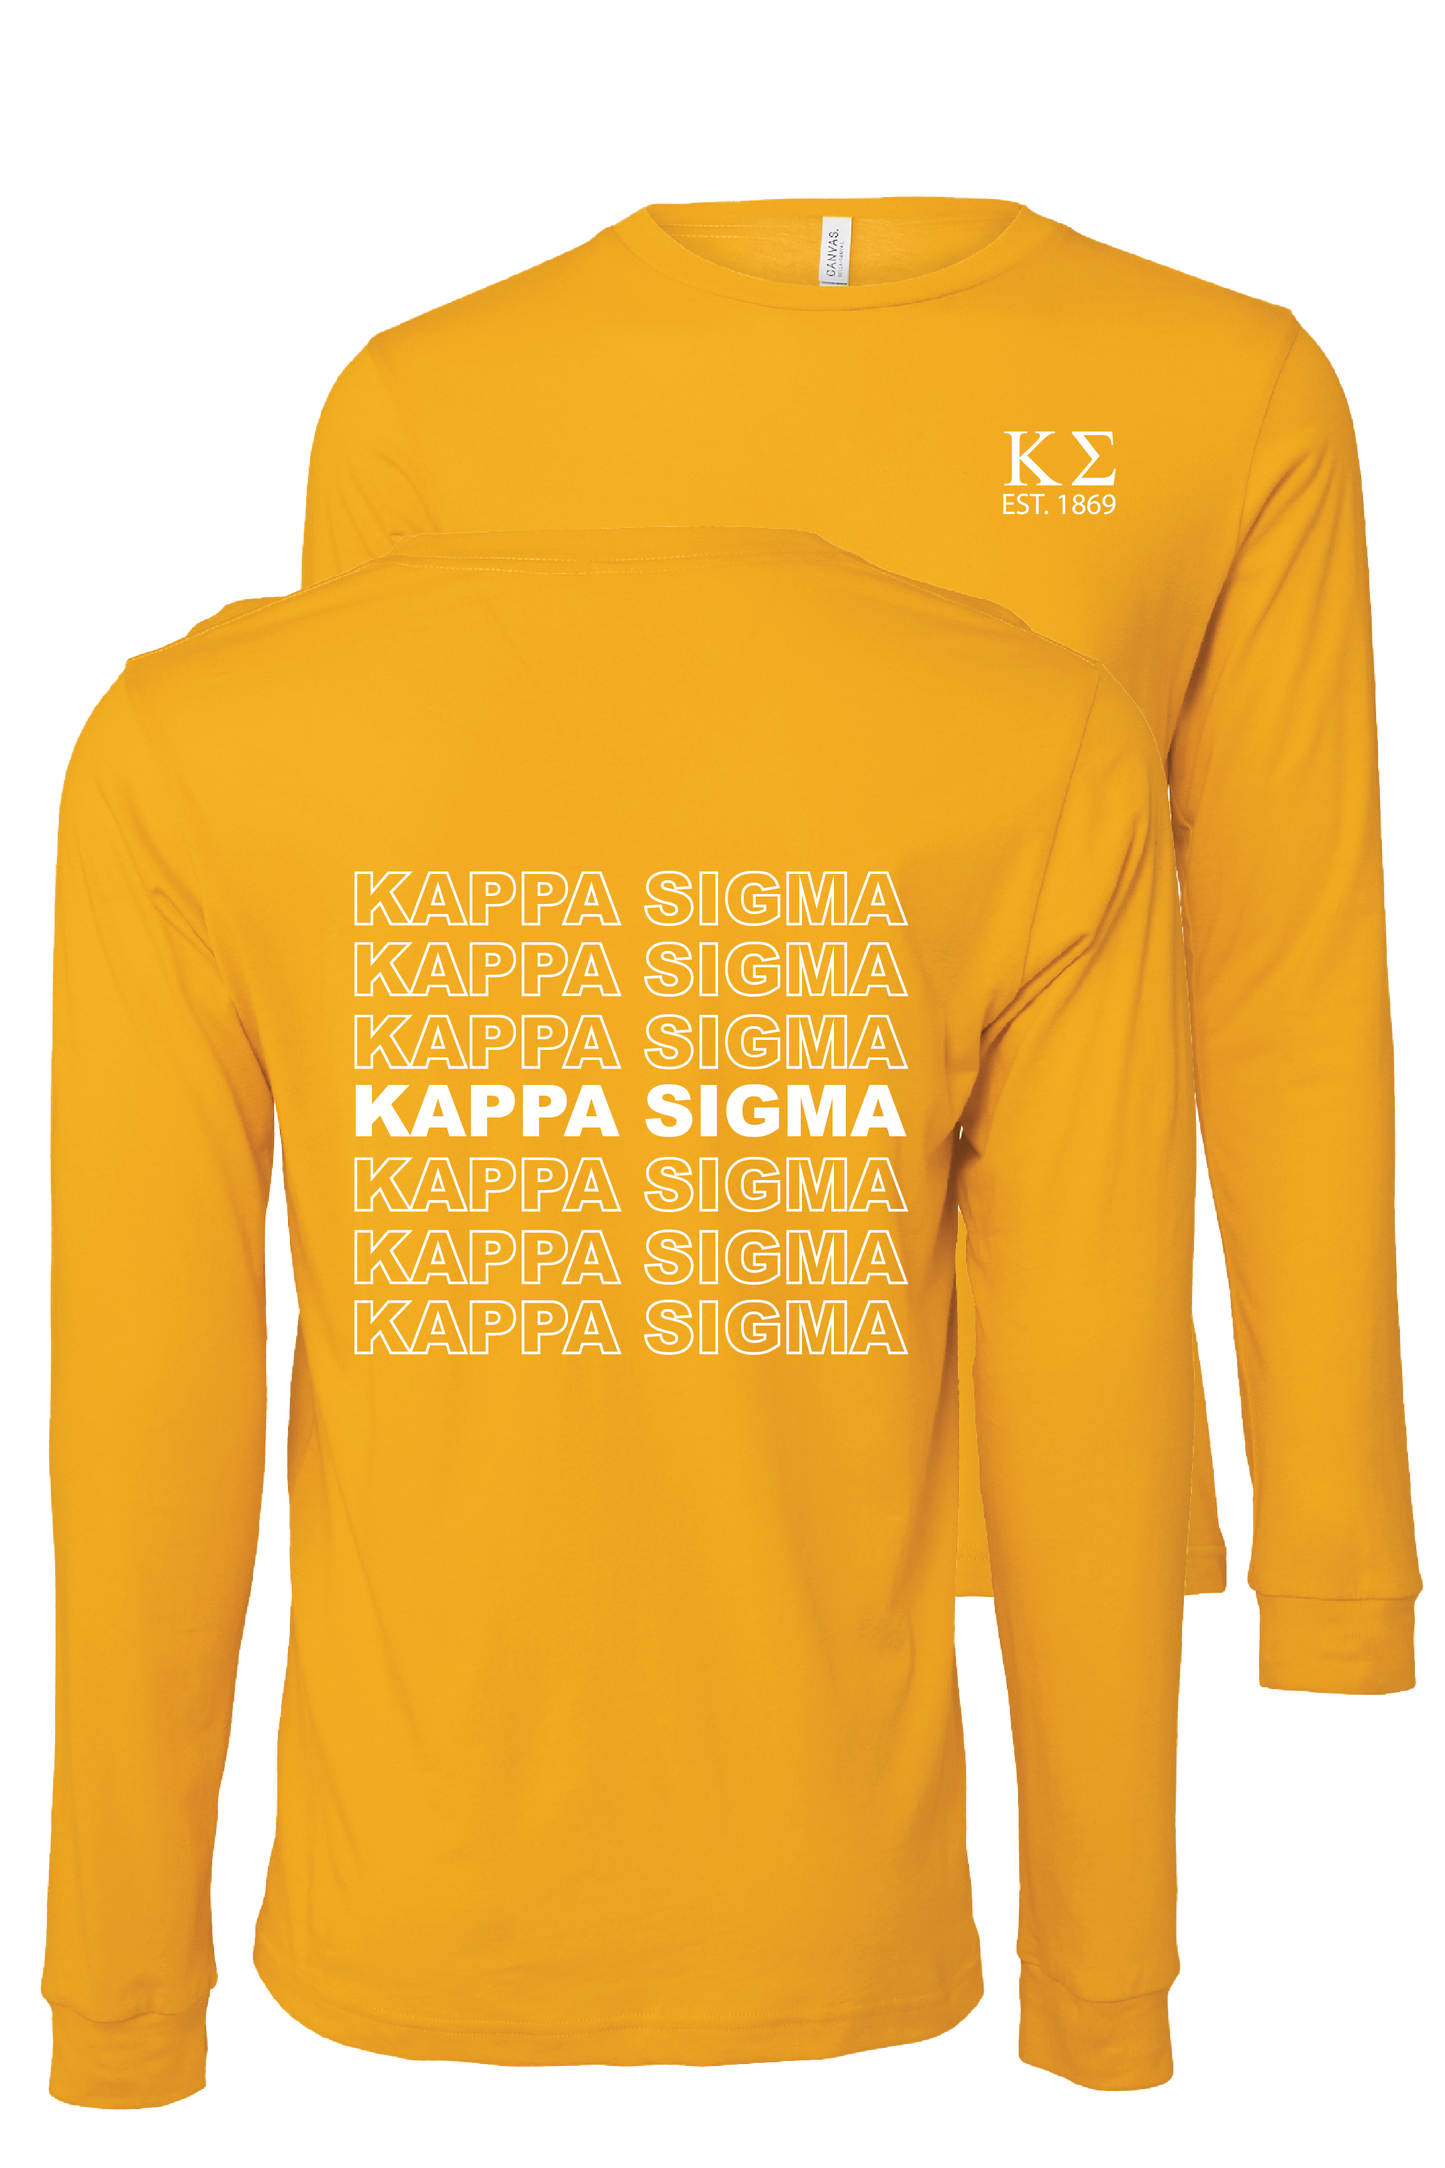 Kappa Sigma Repeating Name Long Sleeve T-Shirts